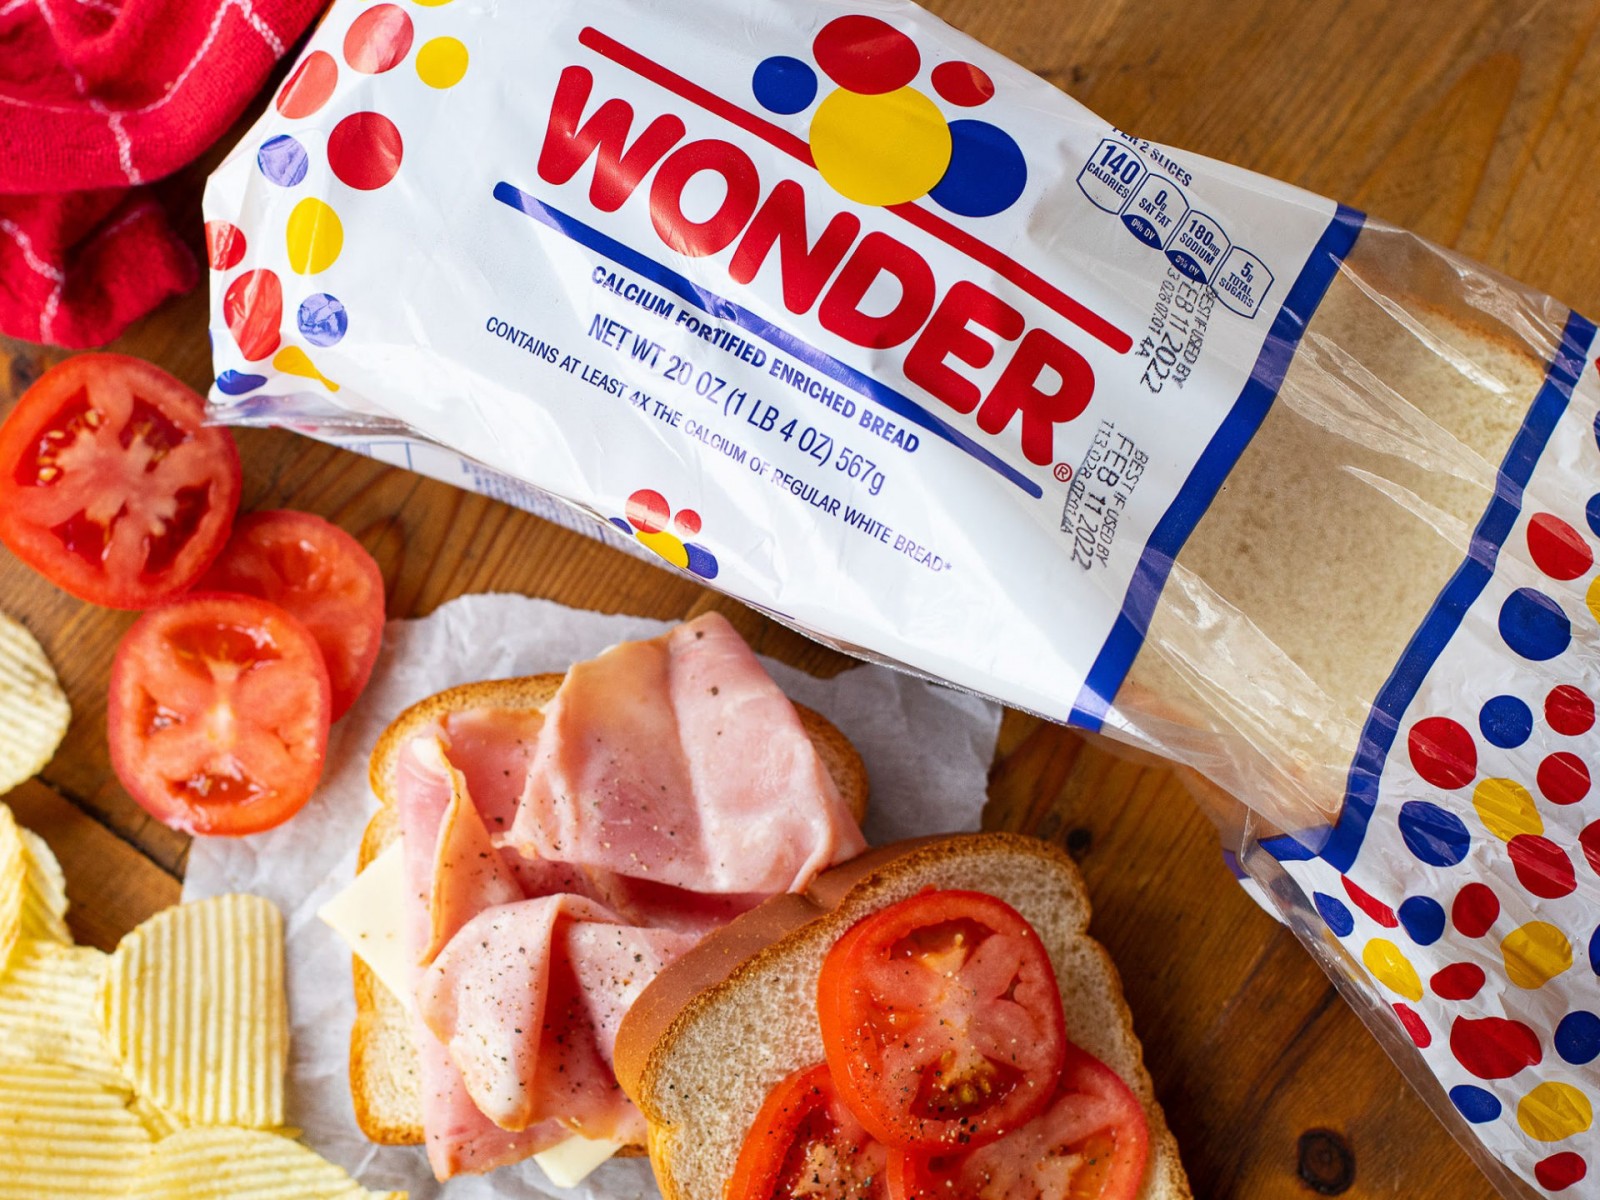 Wonder là một trong những thương hiệu bán bánh mì cắt lát đầu tiên